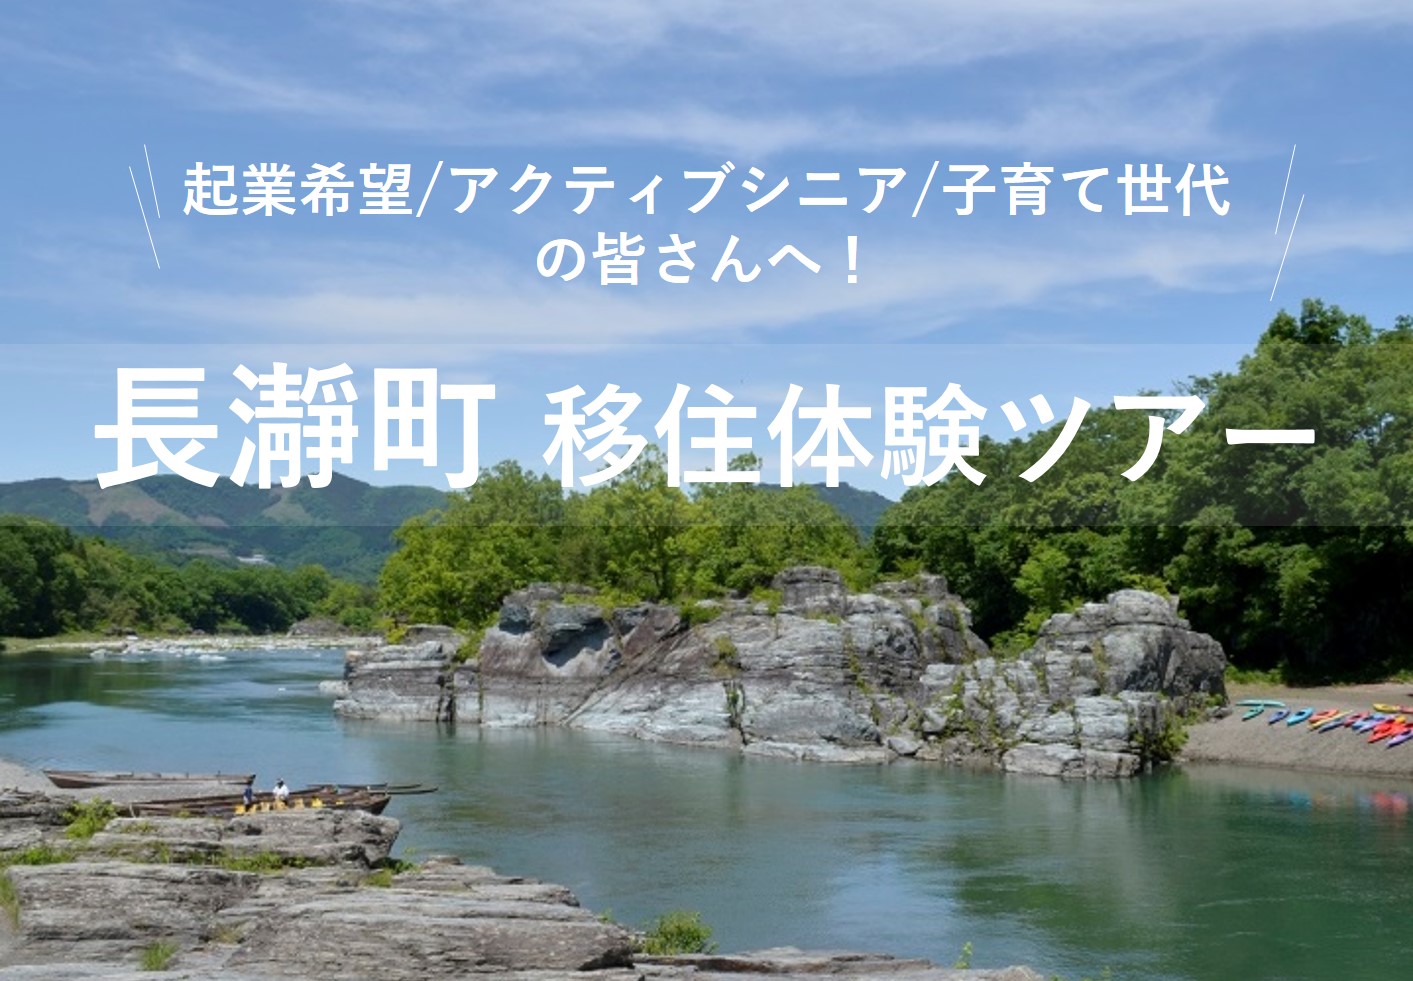 長瀞町 移住体験ツアー | 移住関連イベント情報